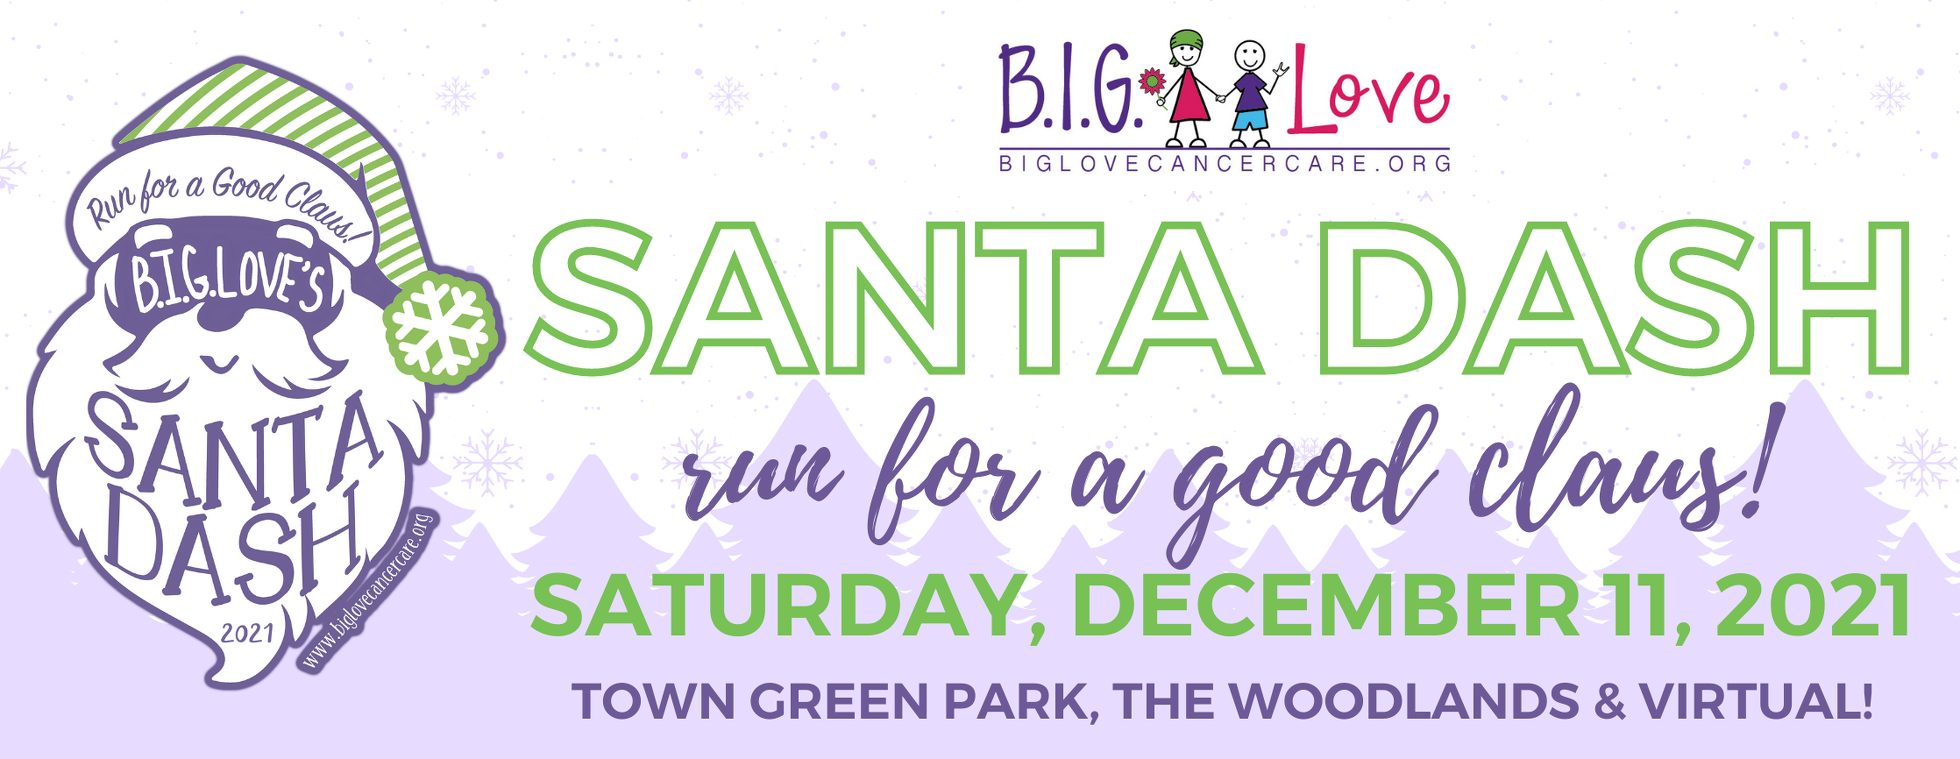 B.I.G. Love Cancer Care's 2021 Santa Dash Run for a Good Claus!